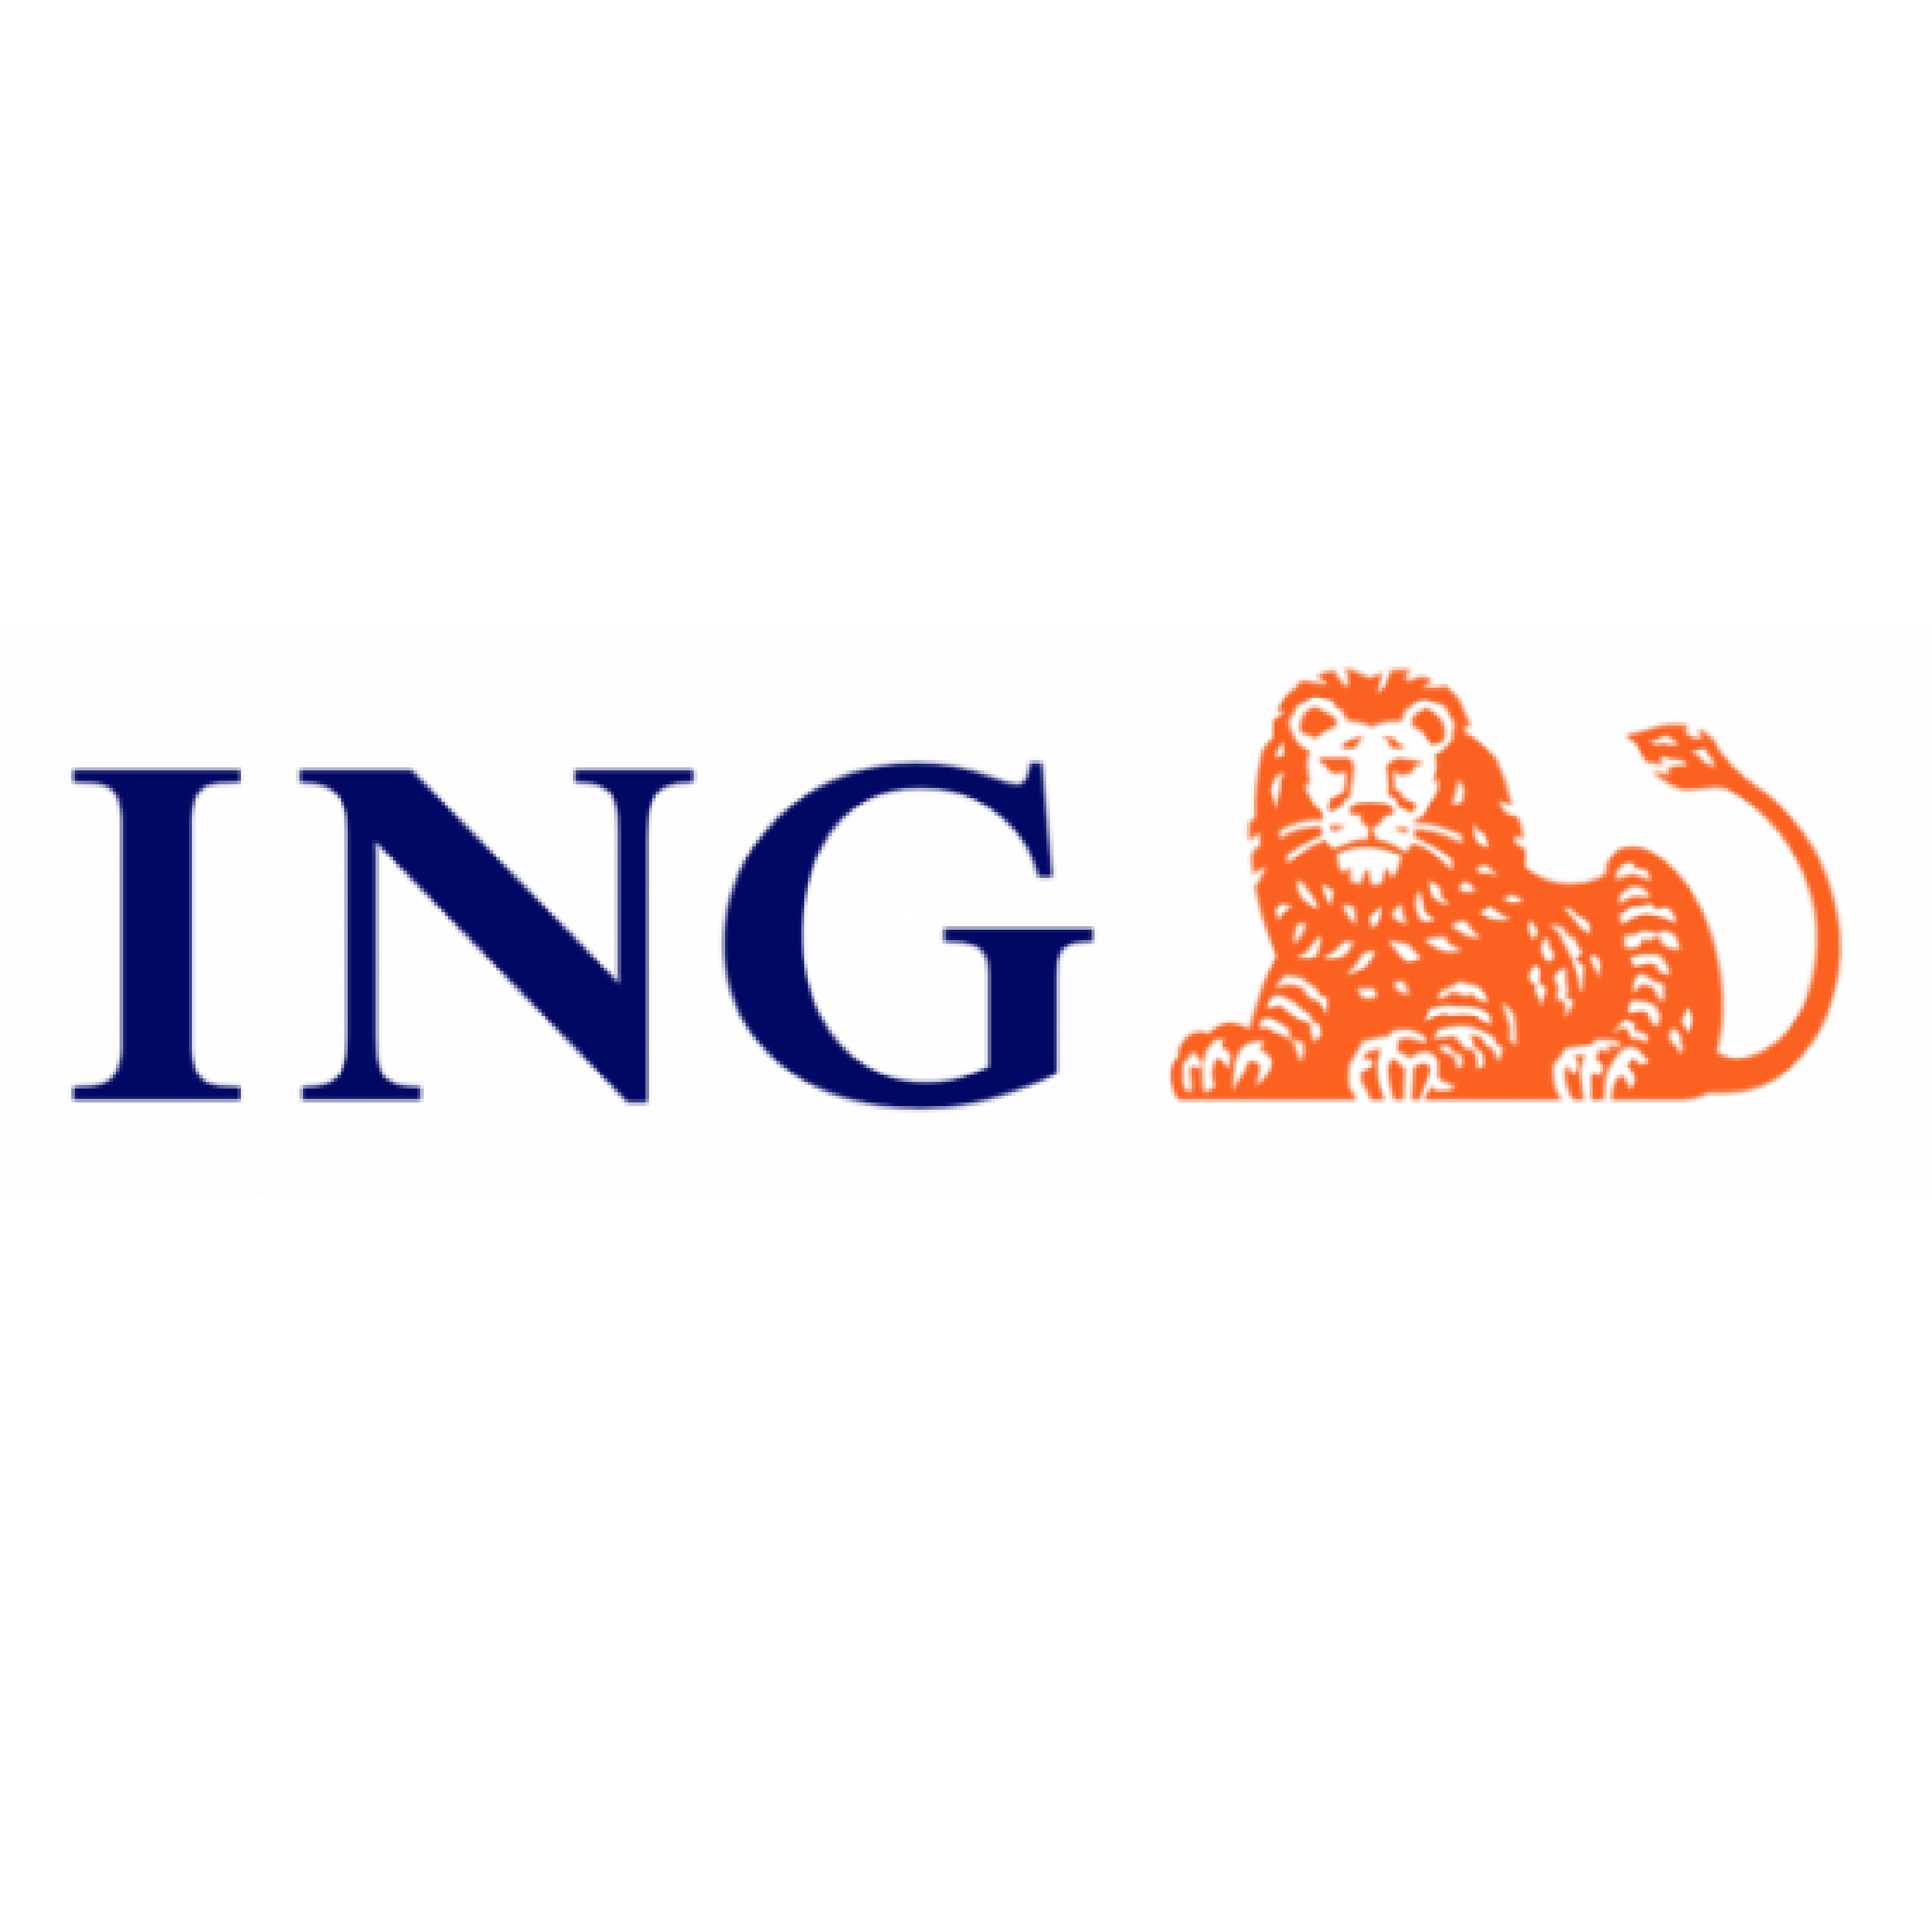 ING Bank N.V. Hong Kong Branch